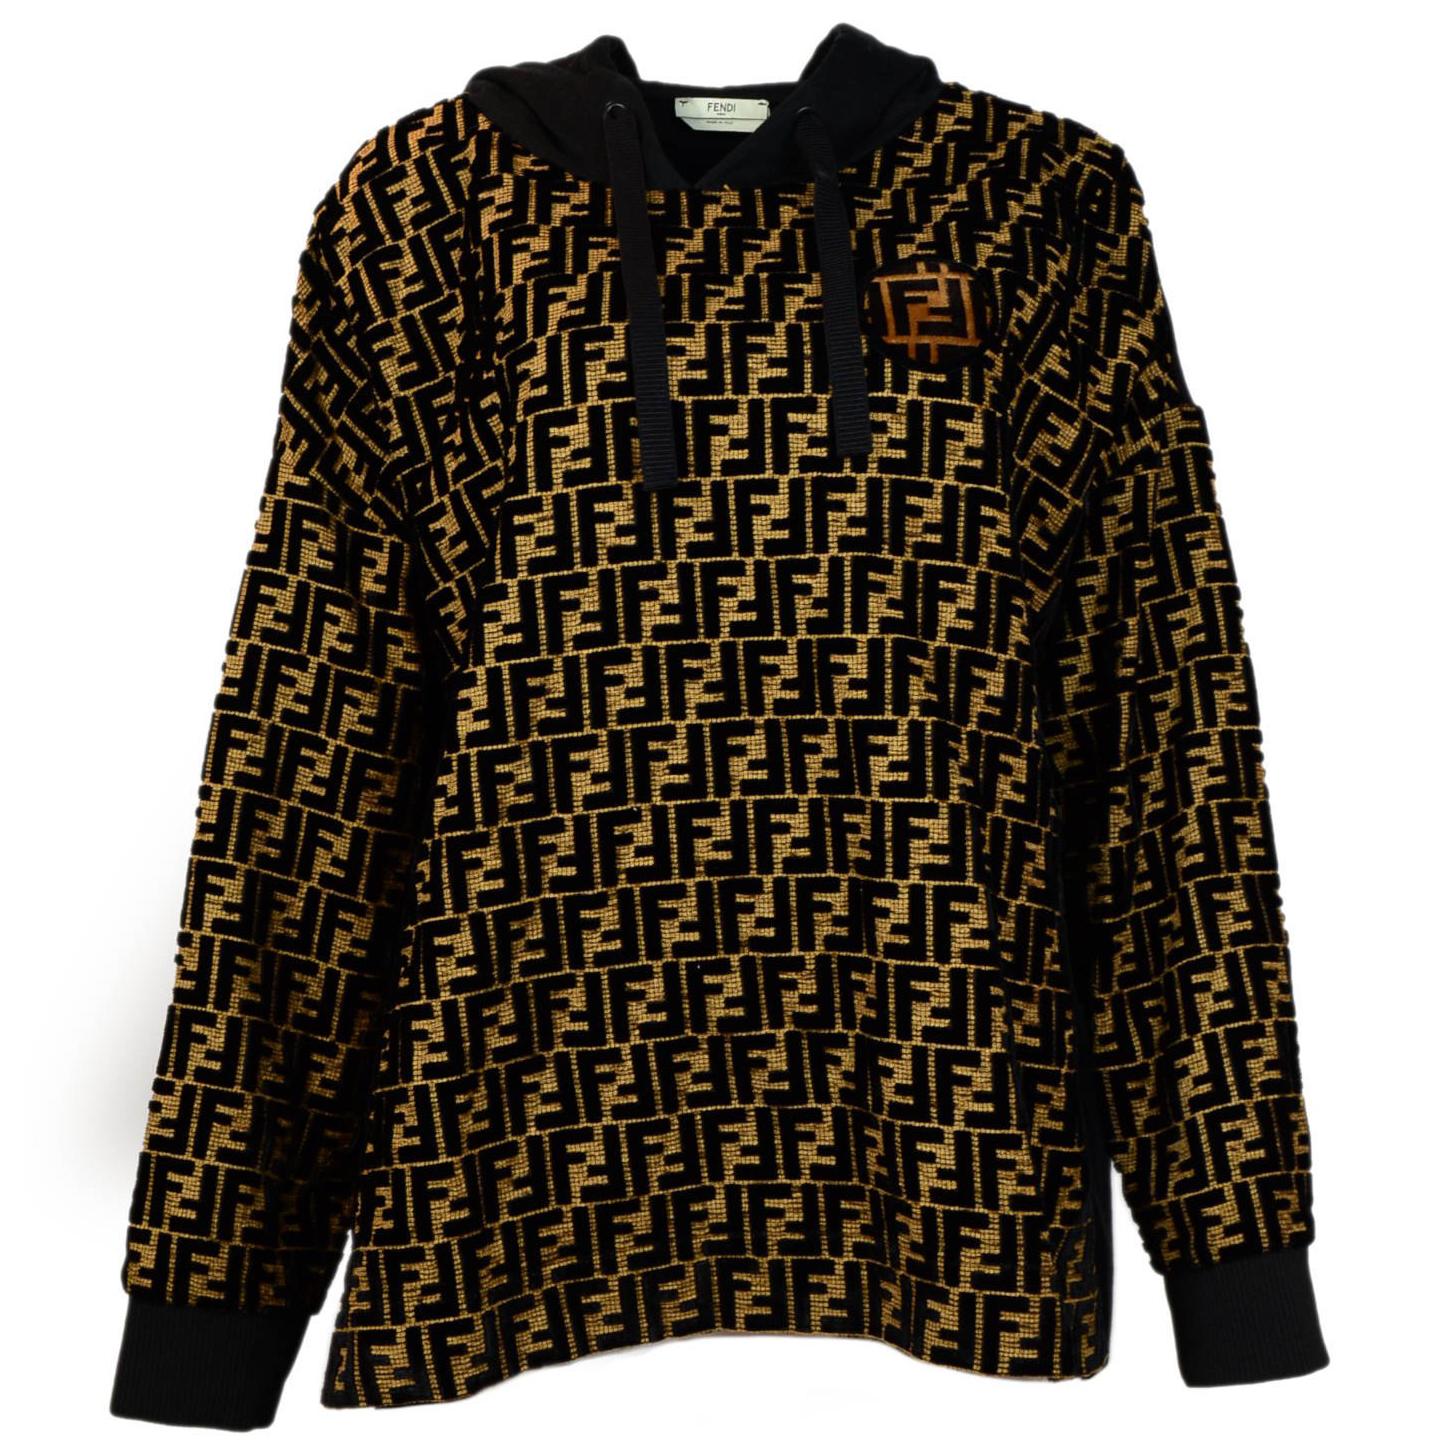 Fendi '18 SOLD OUT Velvet Logo Monogrammed Hooded Top Sweatshirt Sz 48 rt $2, 590